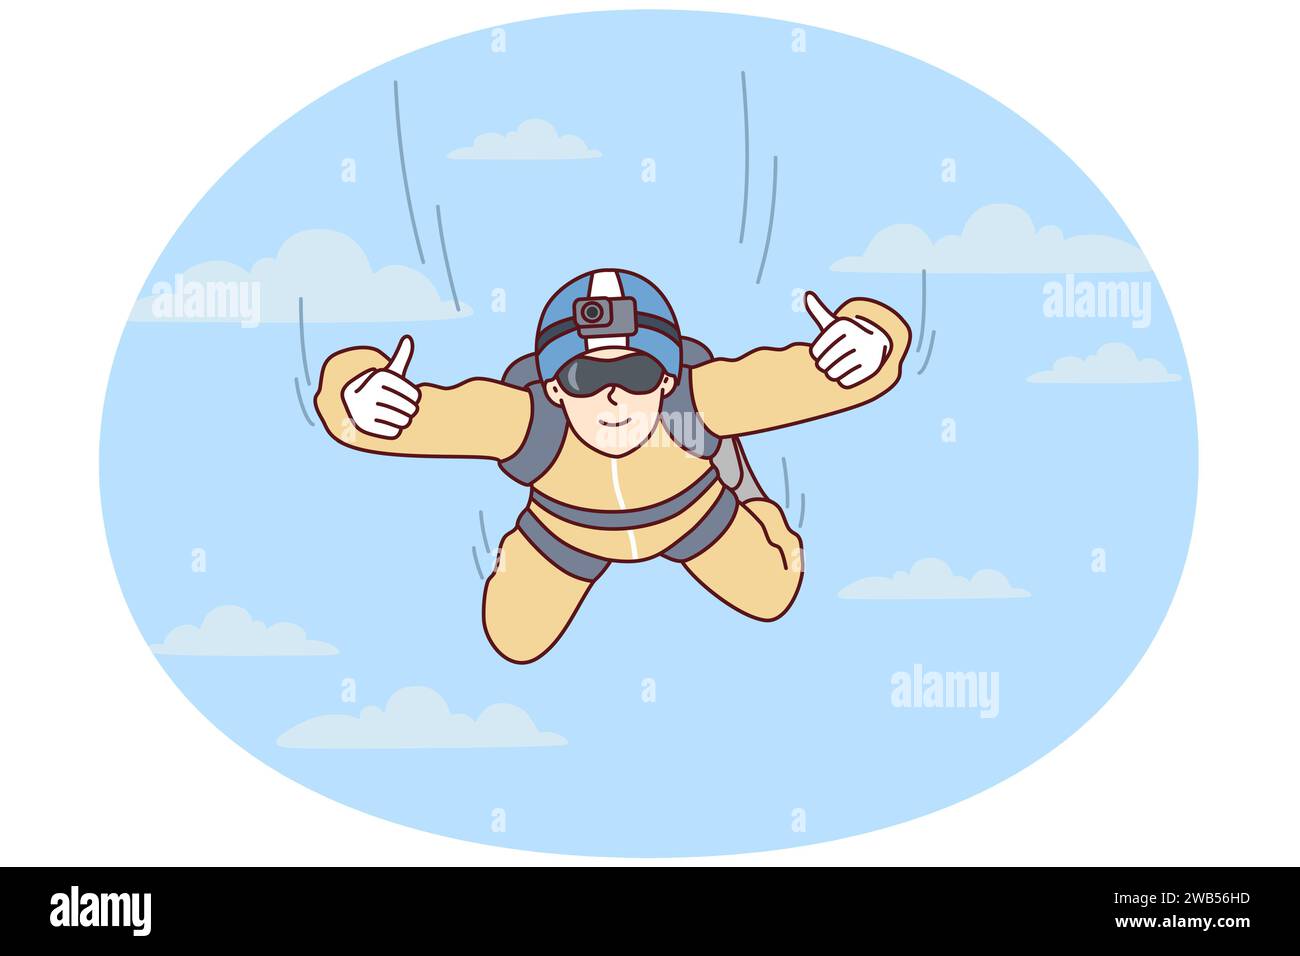 Ein Fallschirmspringer hängt am Himmel und zeigt zwei Hände, Daumen hoch, nachdem er aus dem Flugzeug gesprungen ist. Sportler, der sich für extremes Hobby interessiert, mit einer Kamera, die auf Fliegen auf der Stirn zwischen Wolken fixiert ist. Abbildung eines flachen Vektors Stock Vektor